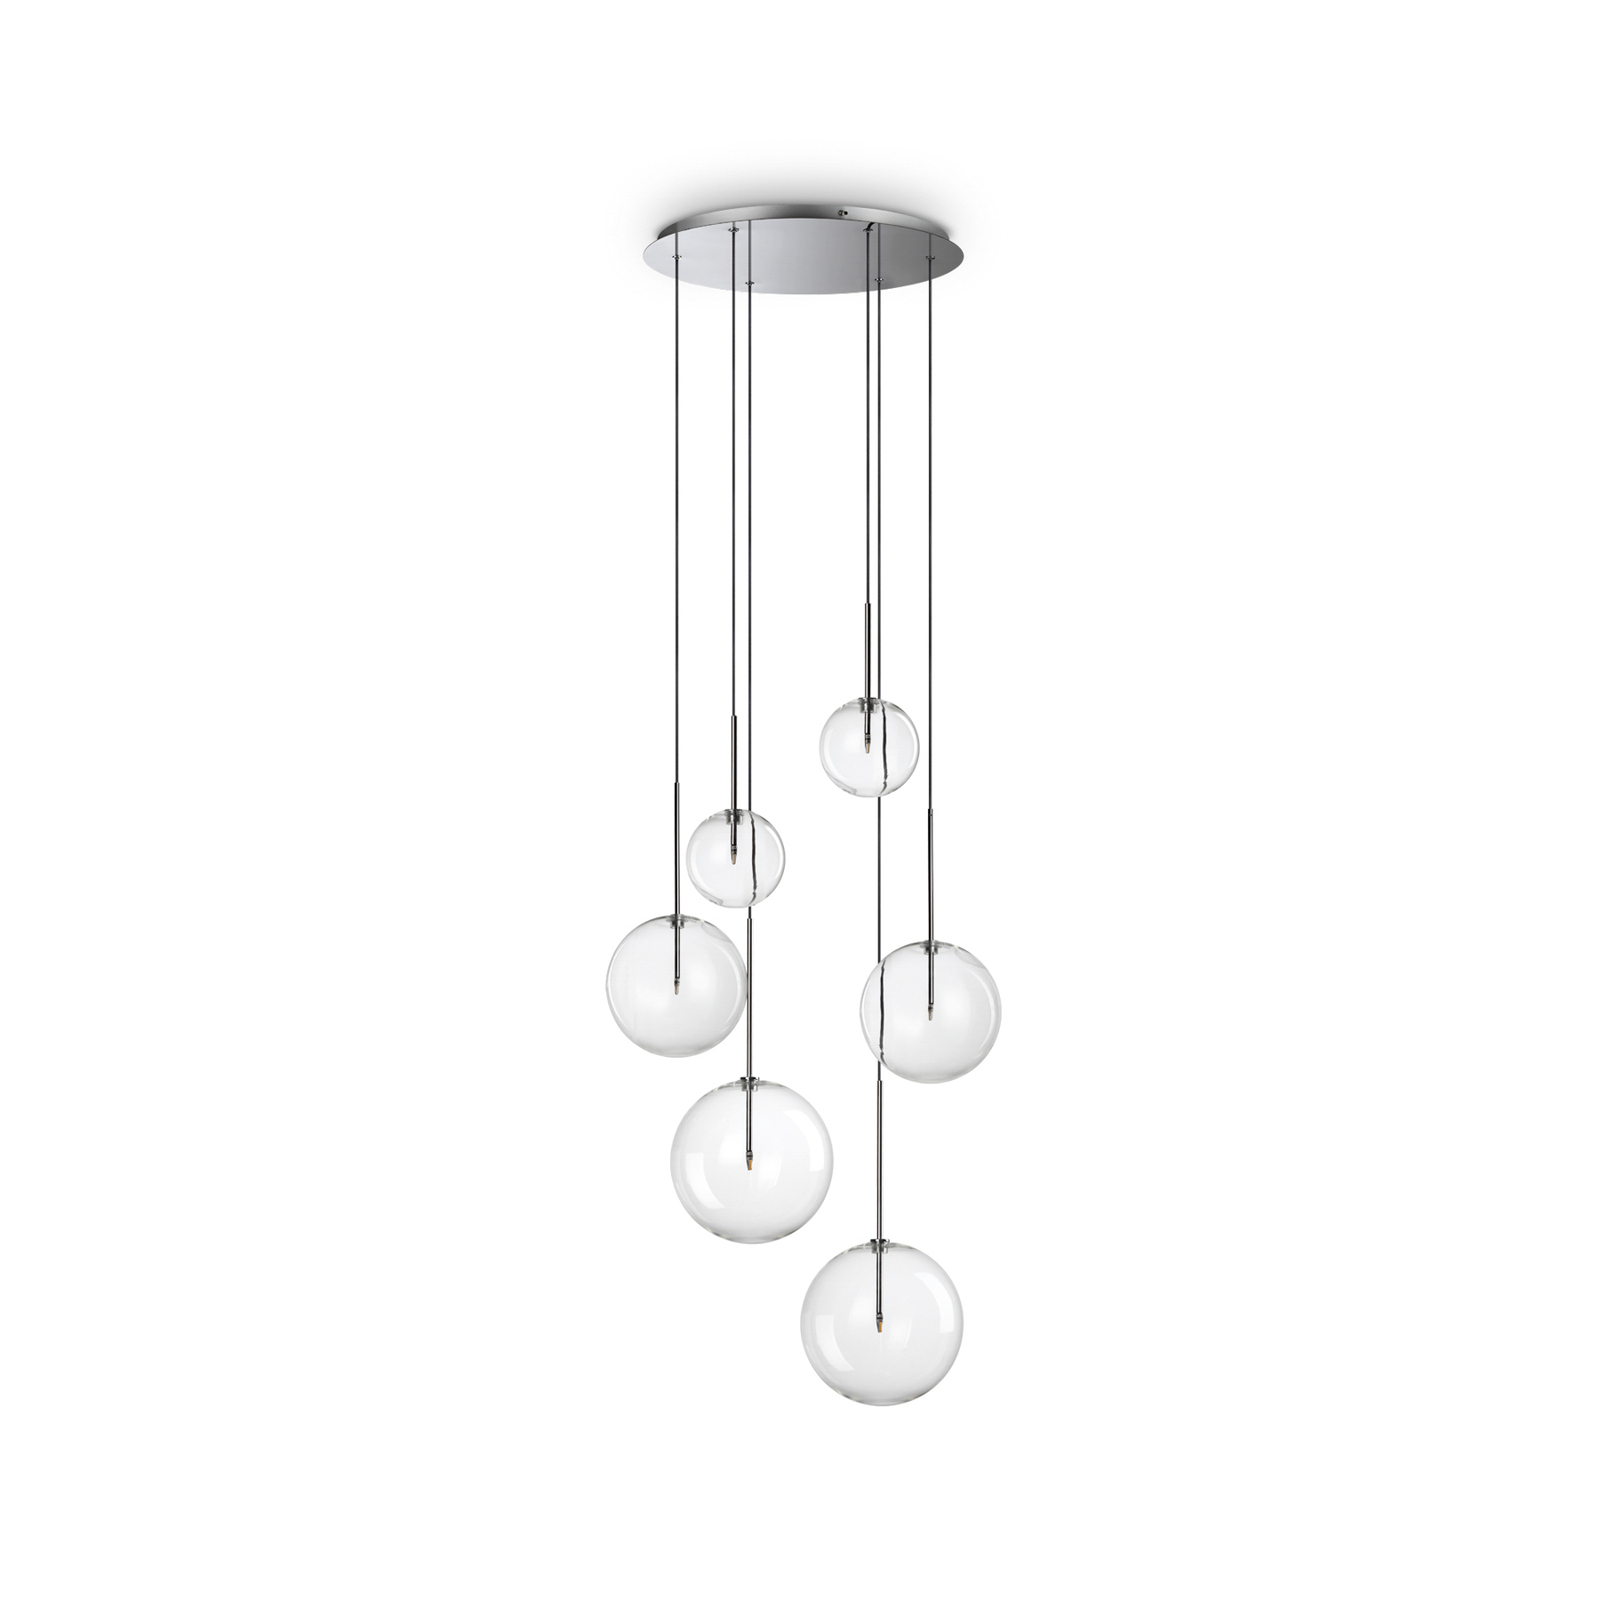 Ideal Lux Equinoxe candeeiro suspenso 6 lâmpadas em vidro cromado